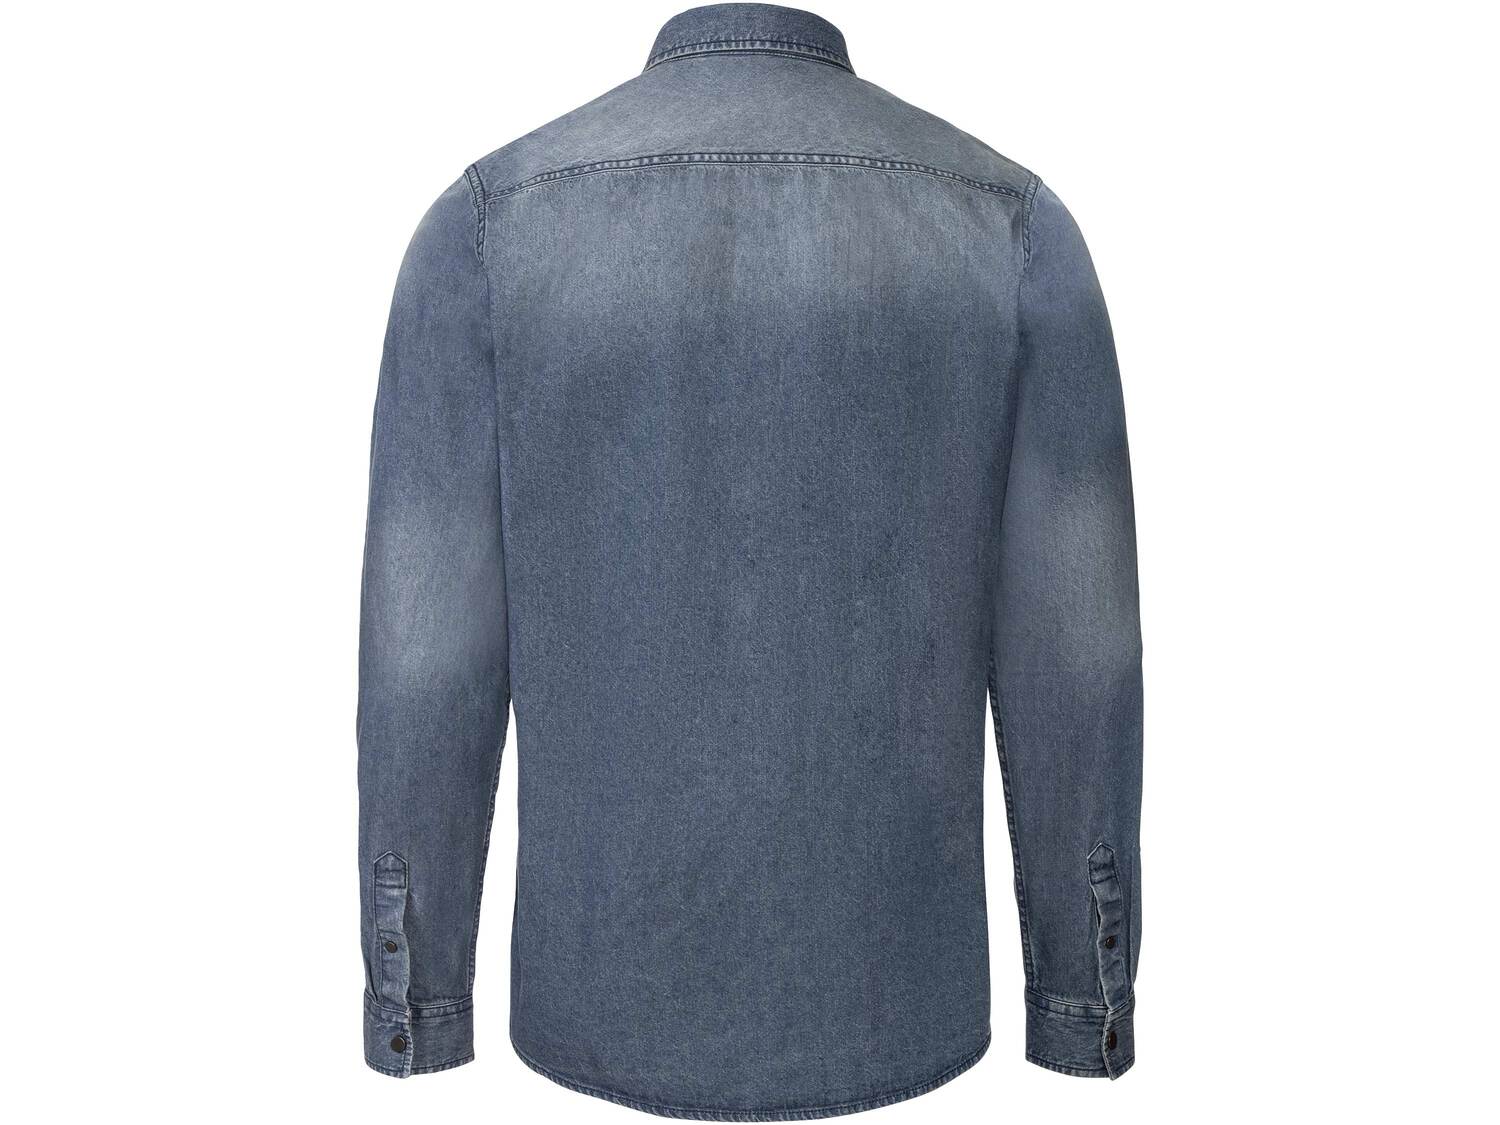 Koszula męska Livergy, cena 39,99 PLN 
- rozmiary: M-XL
- 100% bawełny
Dostępne ...